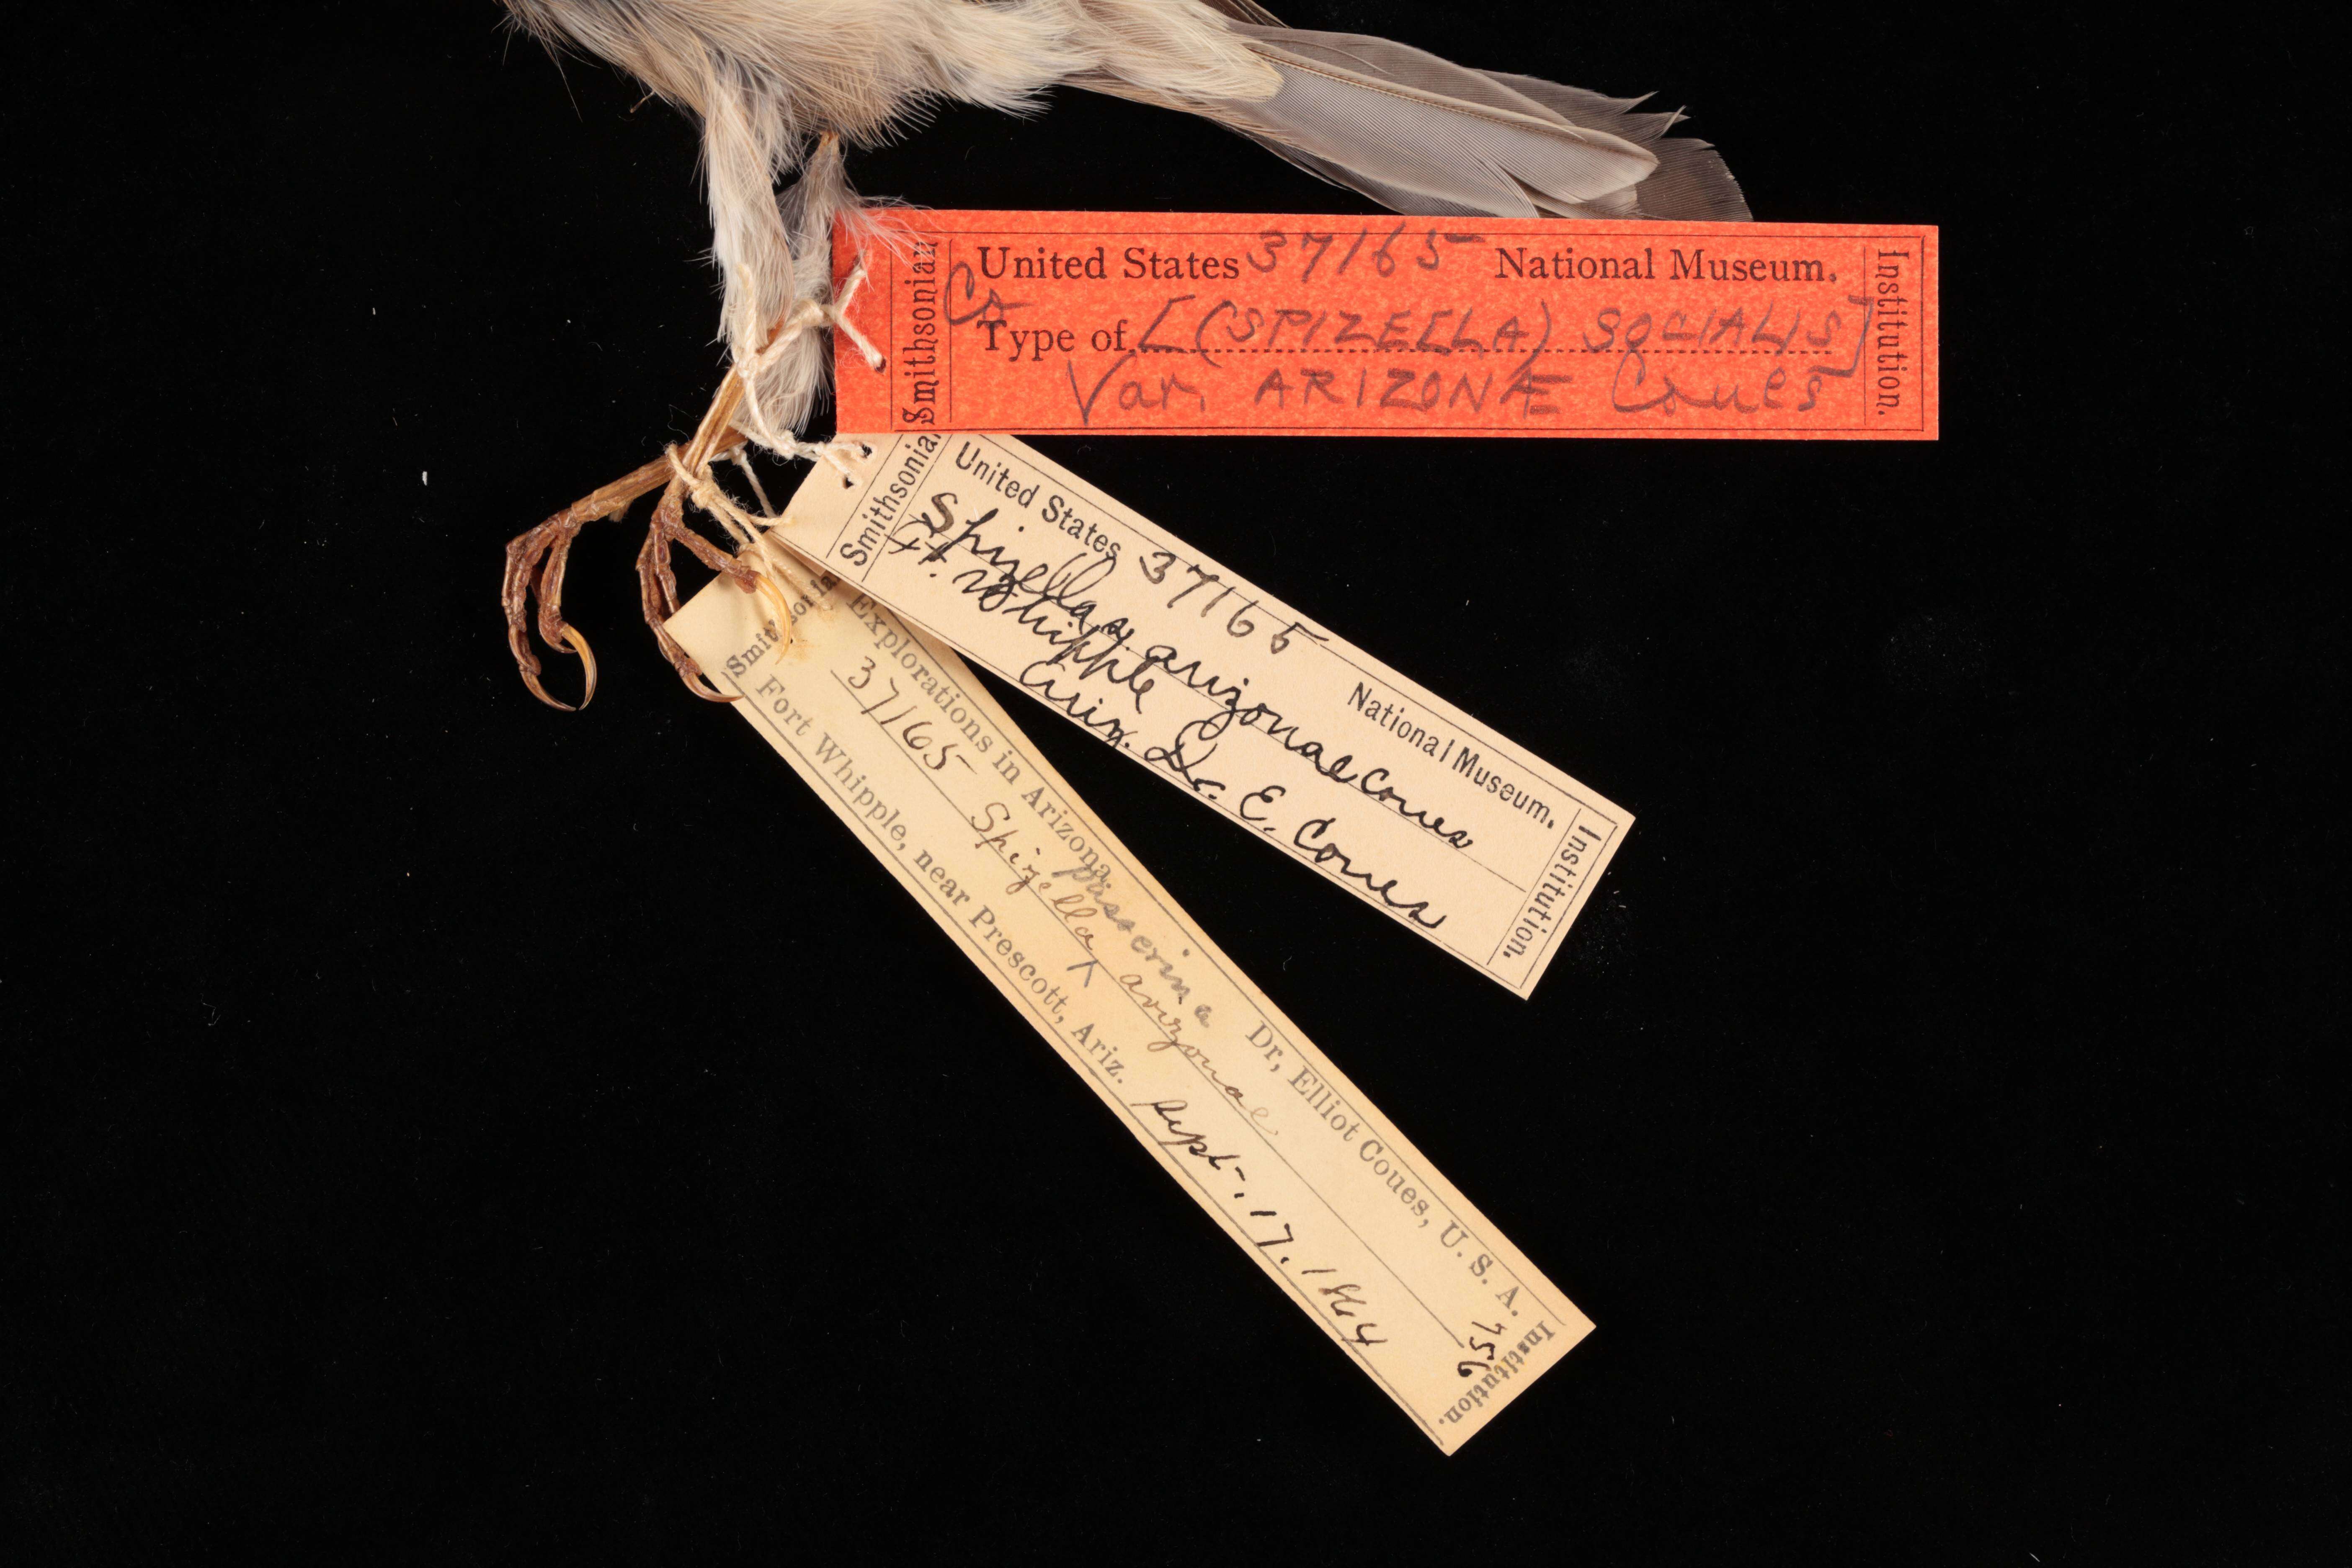 Sivun Spizella passerina arizonae Coues 1872 kuva